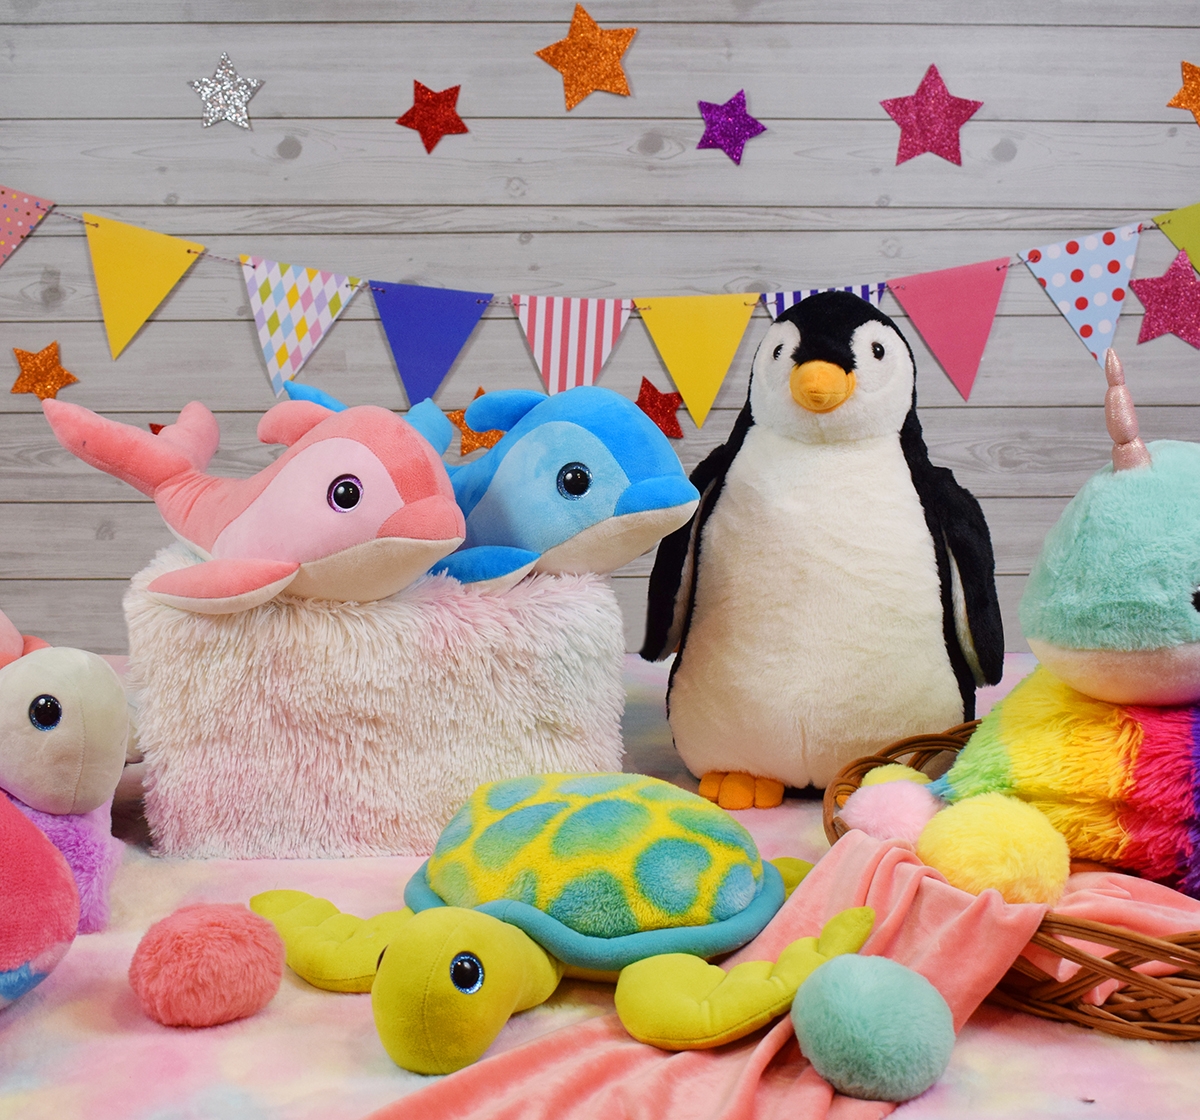 Mirada 42cm penguin soft toy Multicolor 3Y+